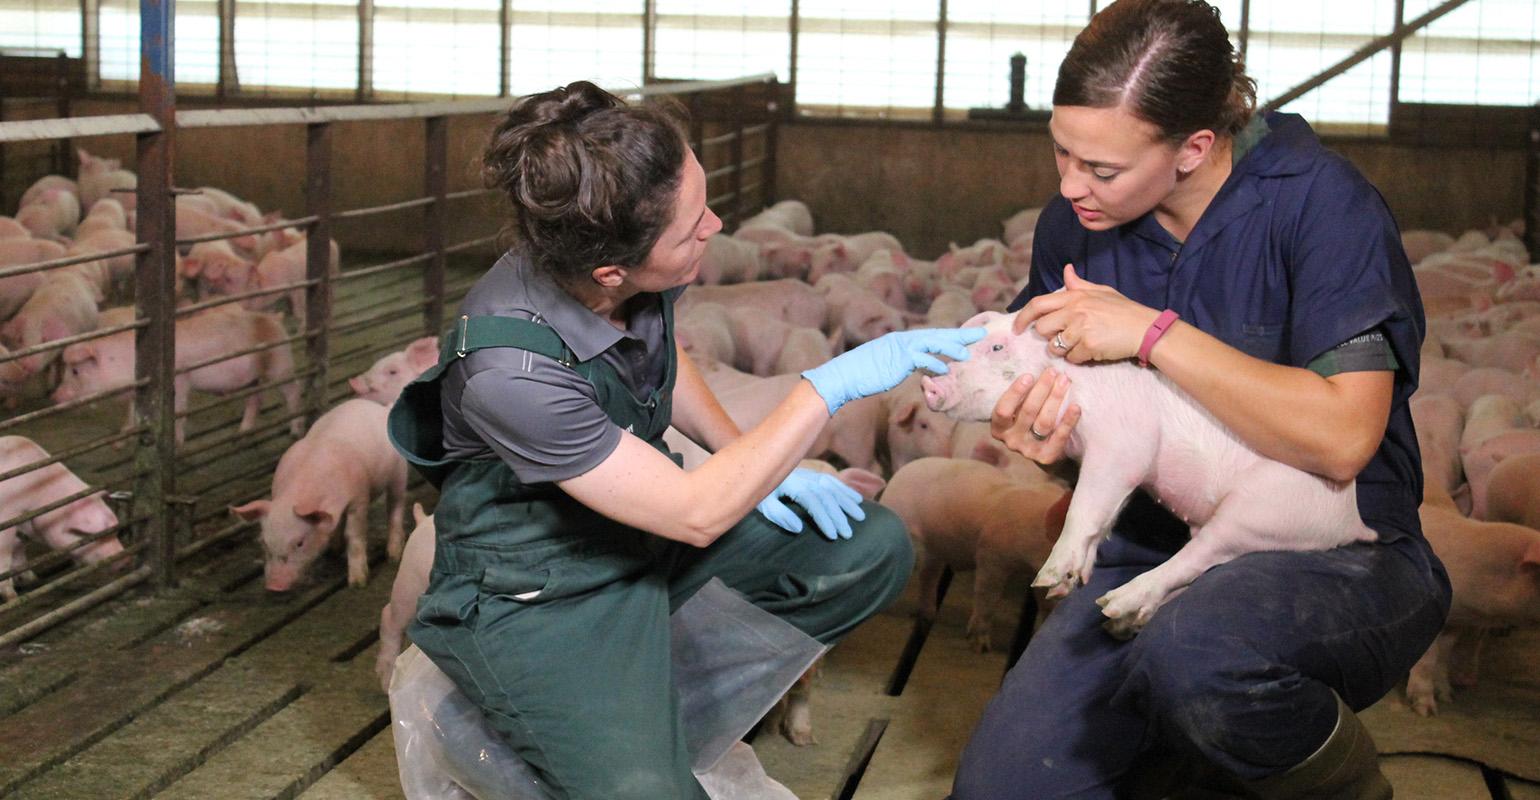 Лечение свиней: инфекционные заболевания, симптомы, профилактика